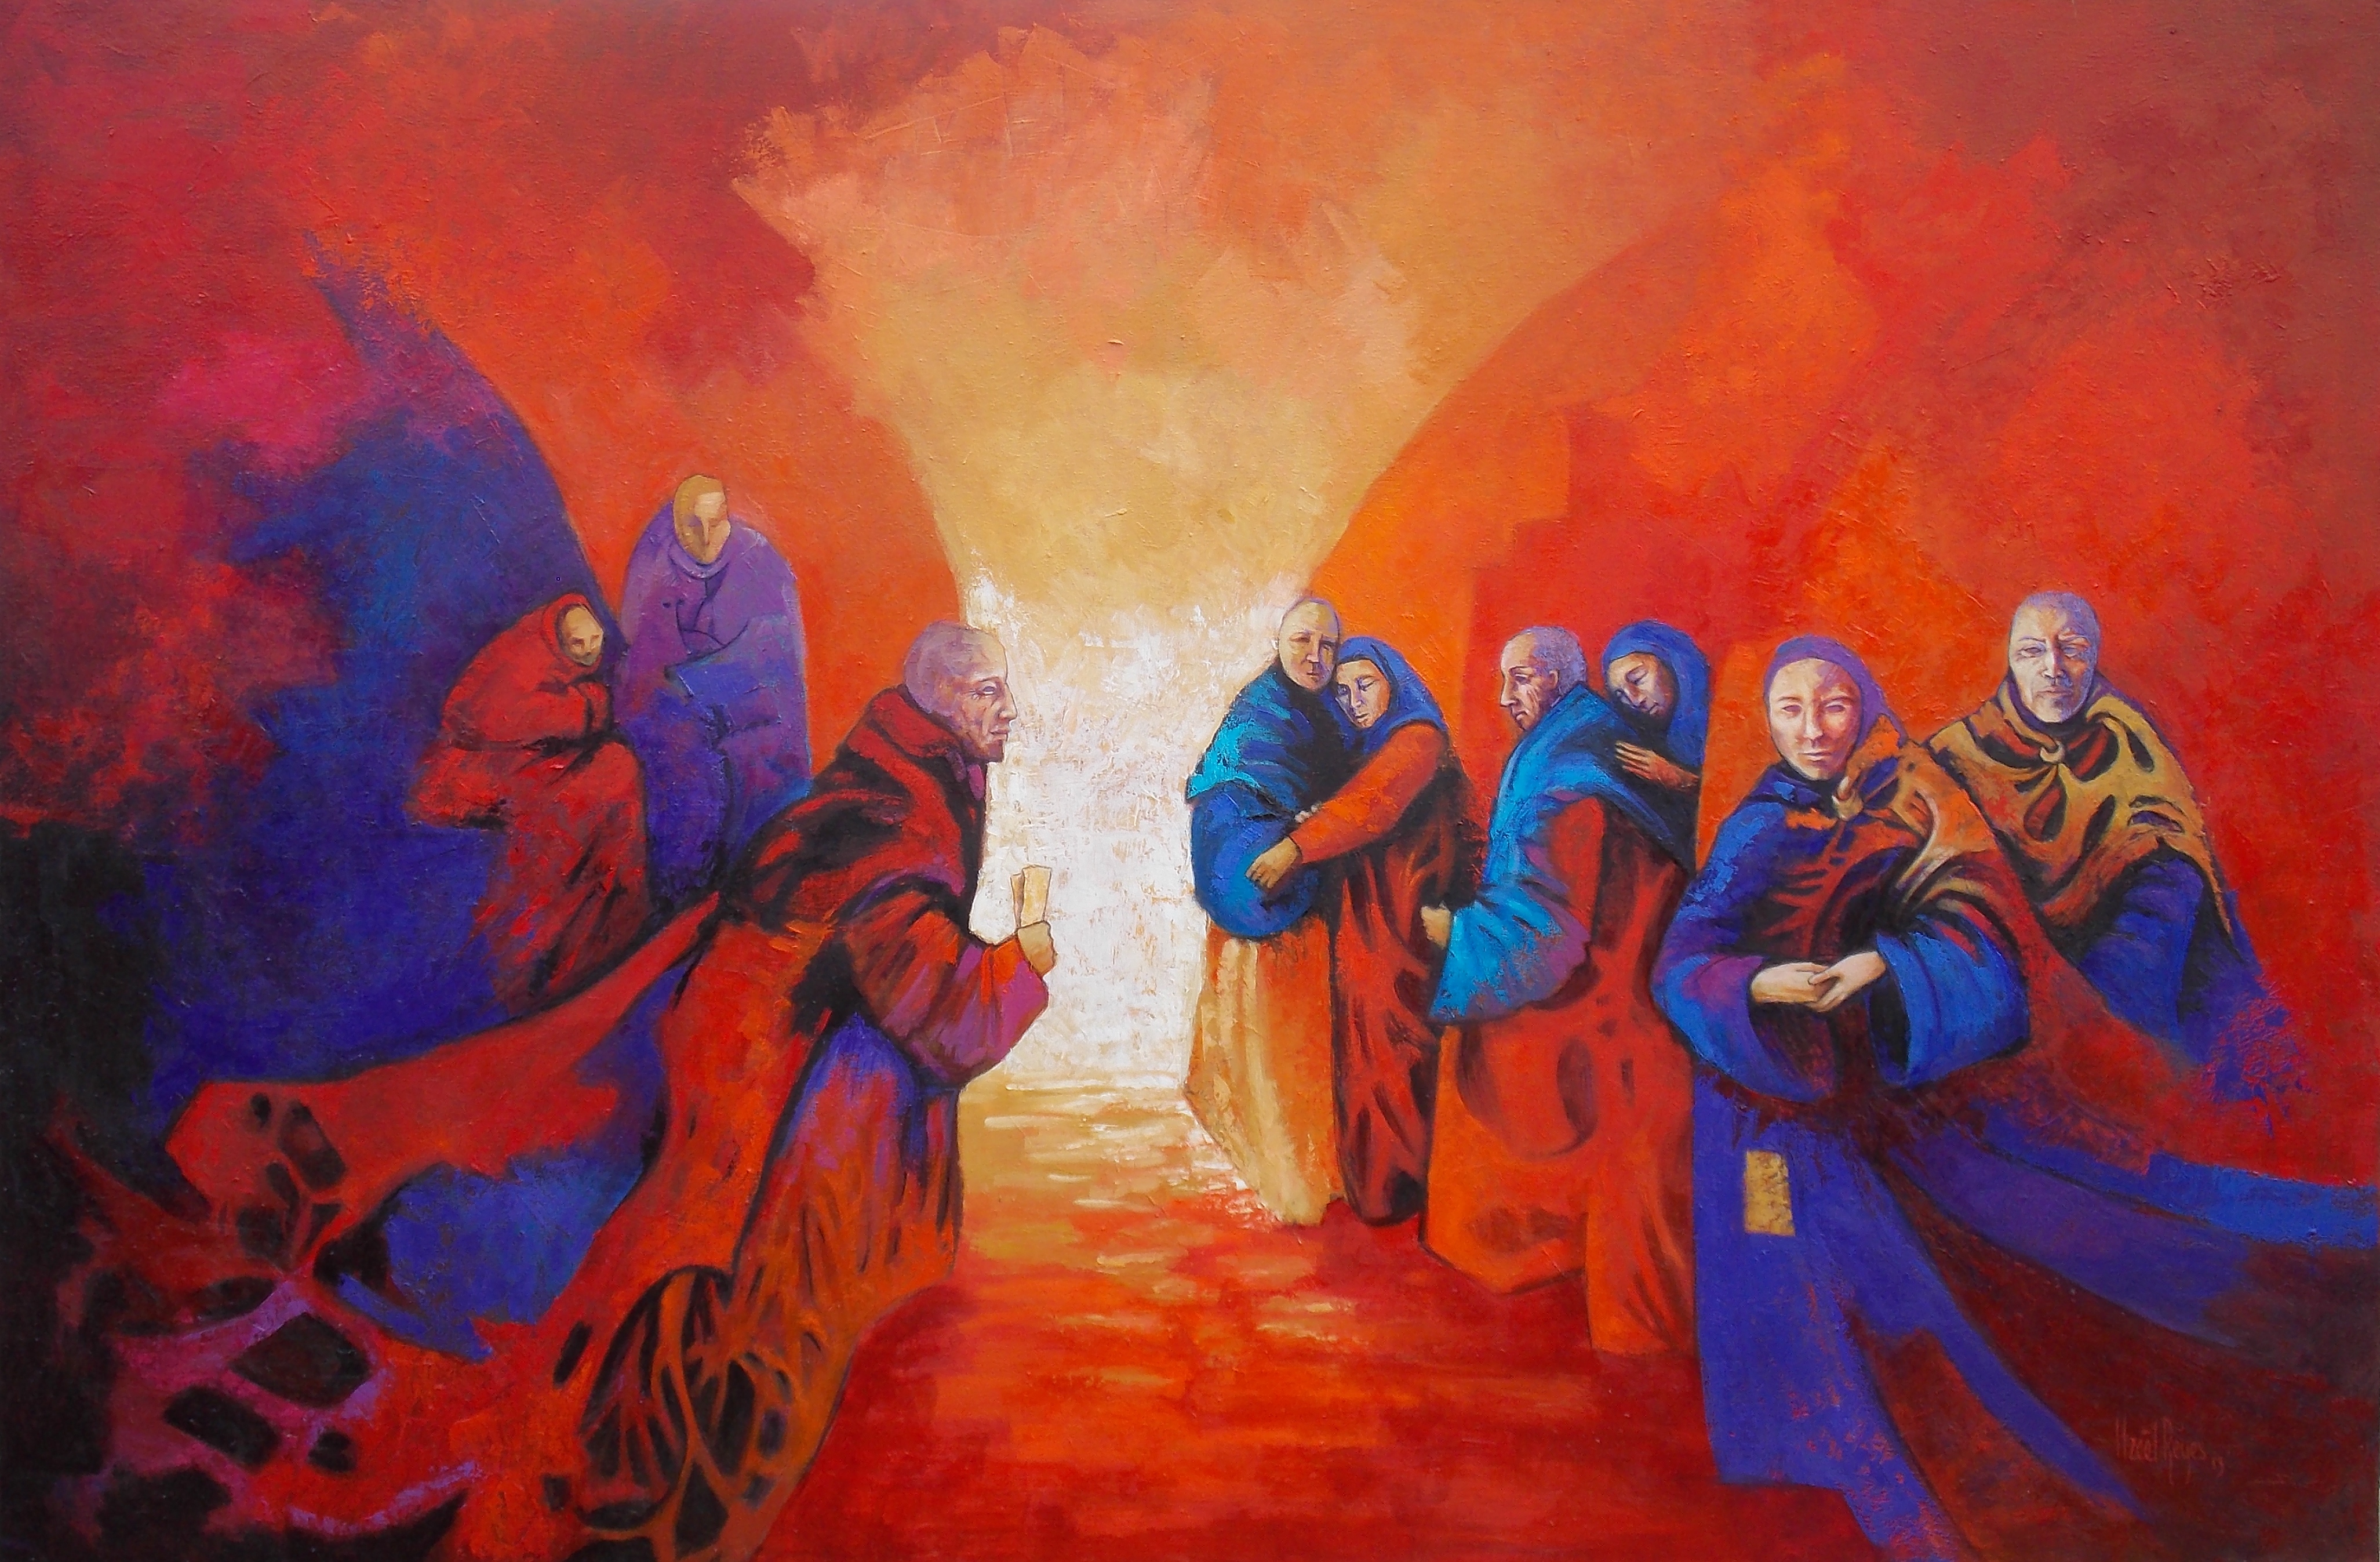 Título: “El mensajero”
Técnica: óleo sobre tela 
Medidas: 80 x 120 cm
Autora: Itzeel Reyes